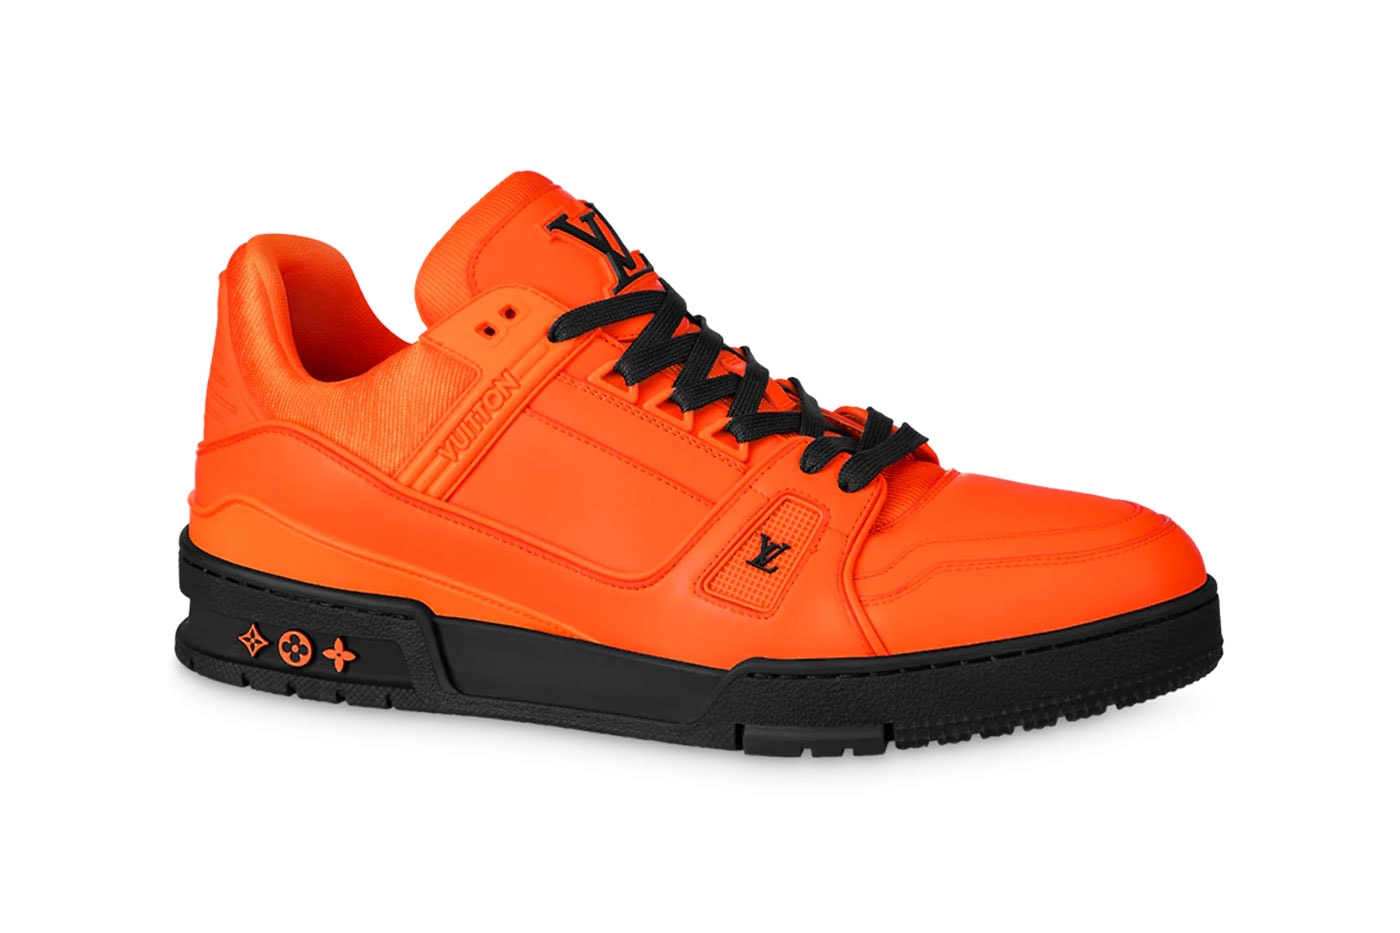 Louis Vuitton LV Trainer Sneaker Tonal Color Collection virgil abloh sneakers footwar LV2 Nigo shoes fashion paris skate 